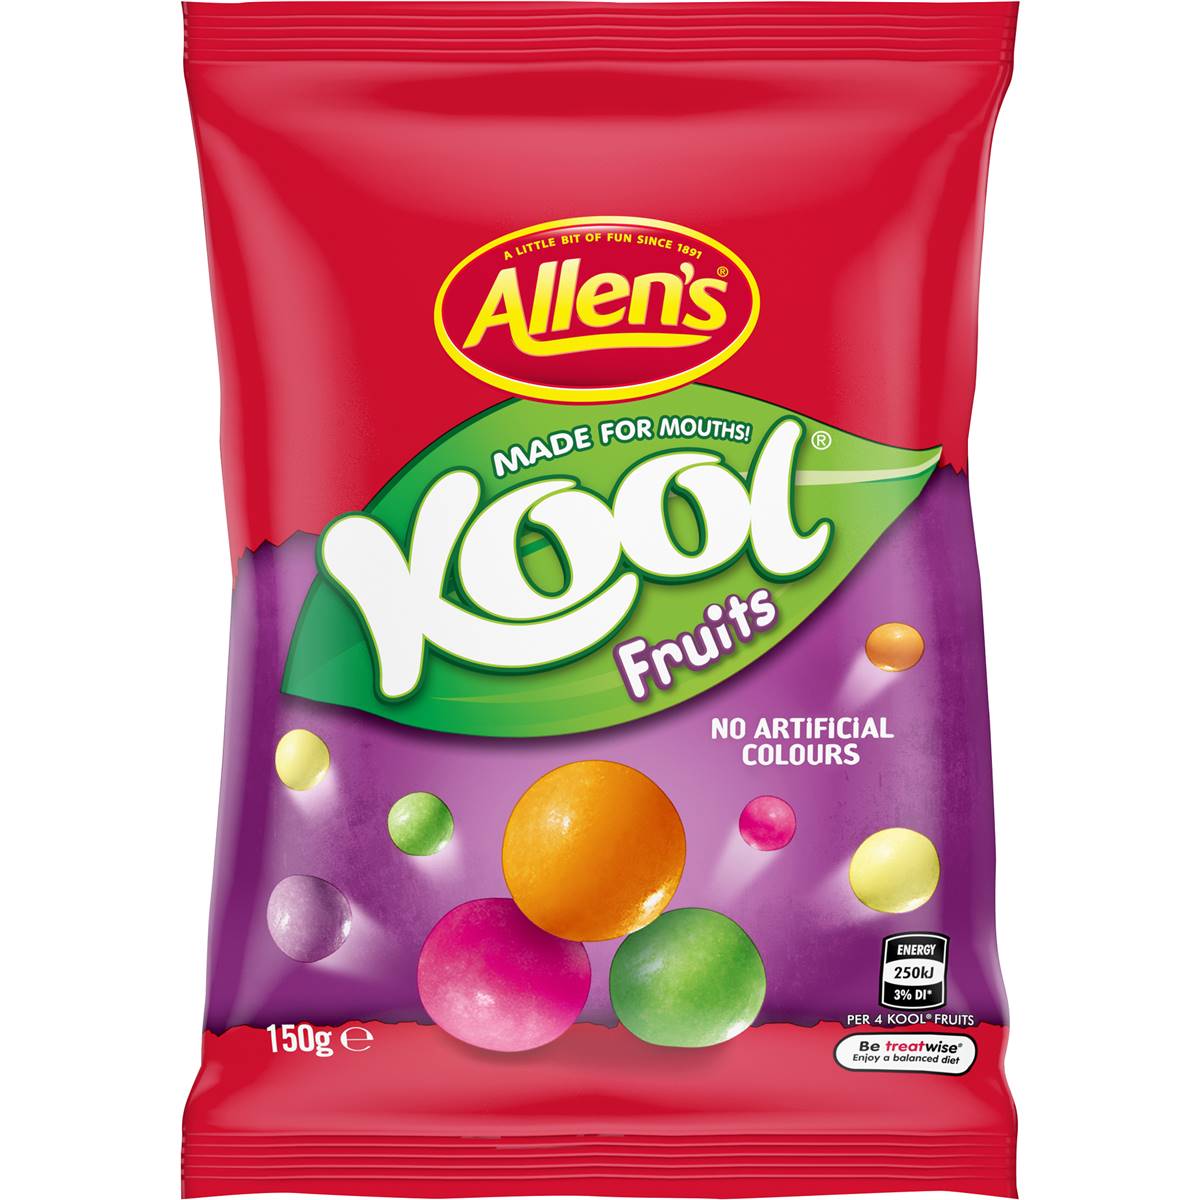 Calories in Allen's Kool Fruits